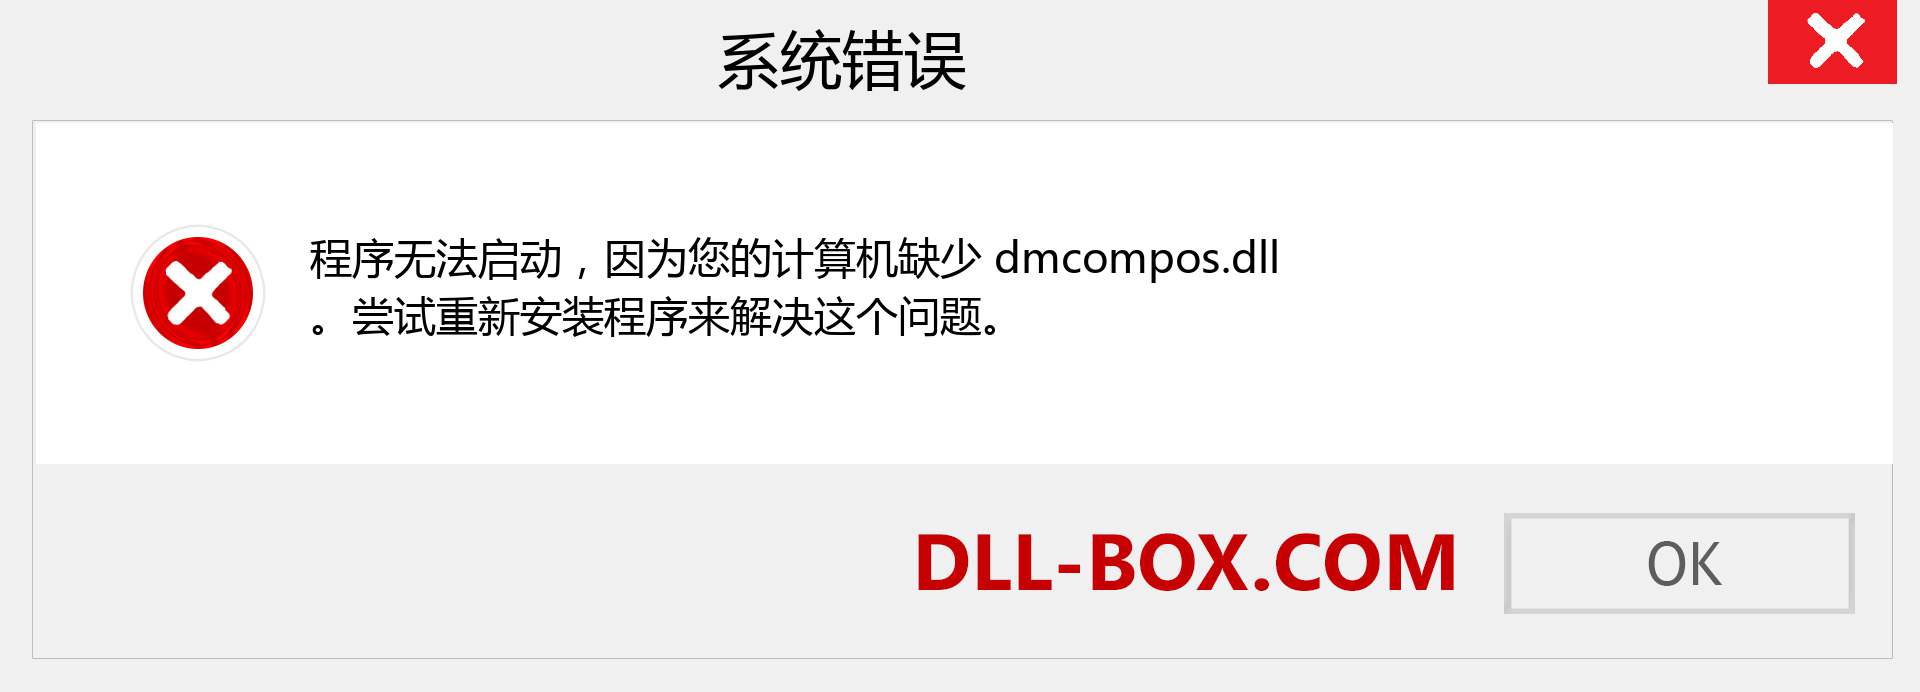 dmcompos.dll 文件丢失？。 适用于 Windows 7、8、10 的下载 - 修复 Windows、照片、图像上的 dmcompos dll 丢失错误